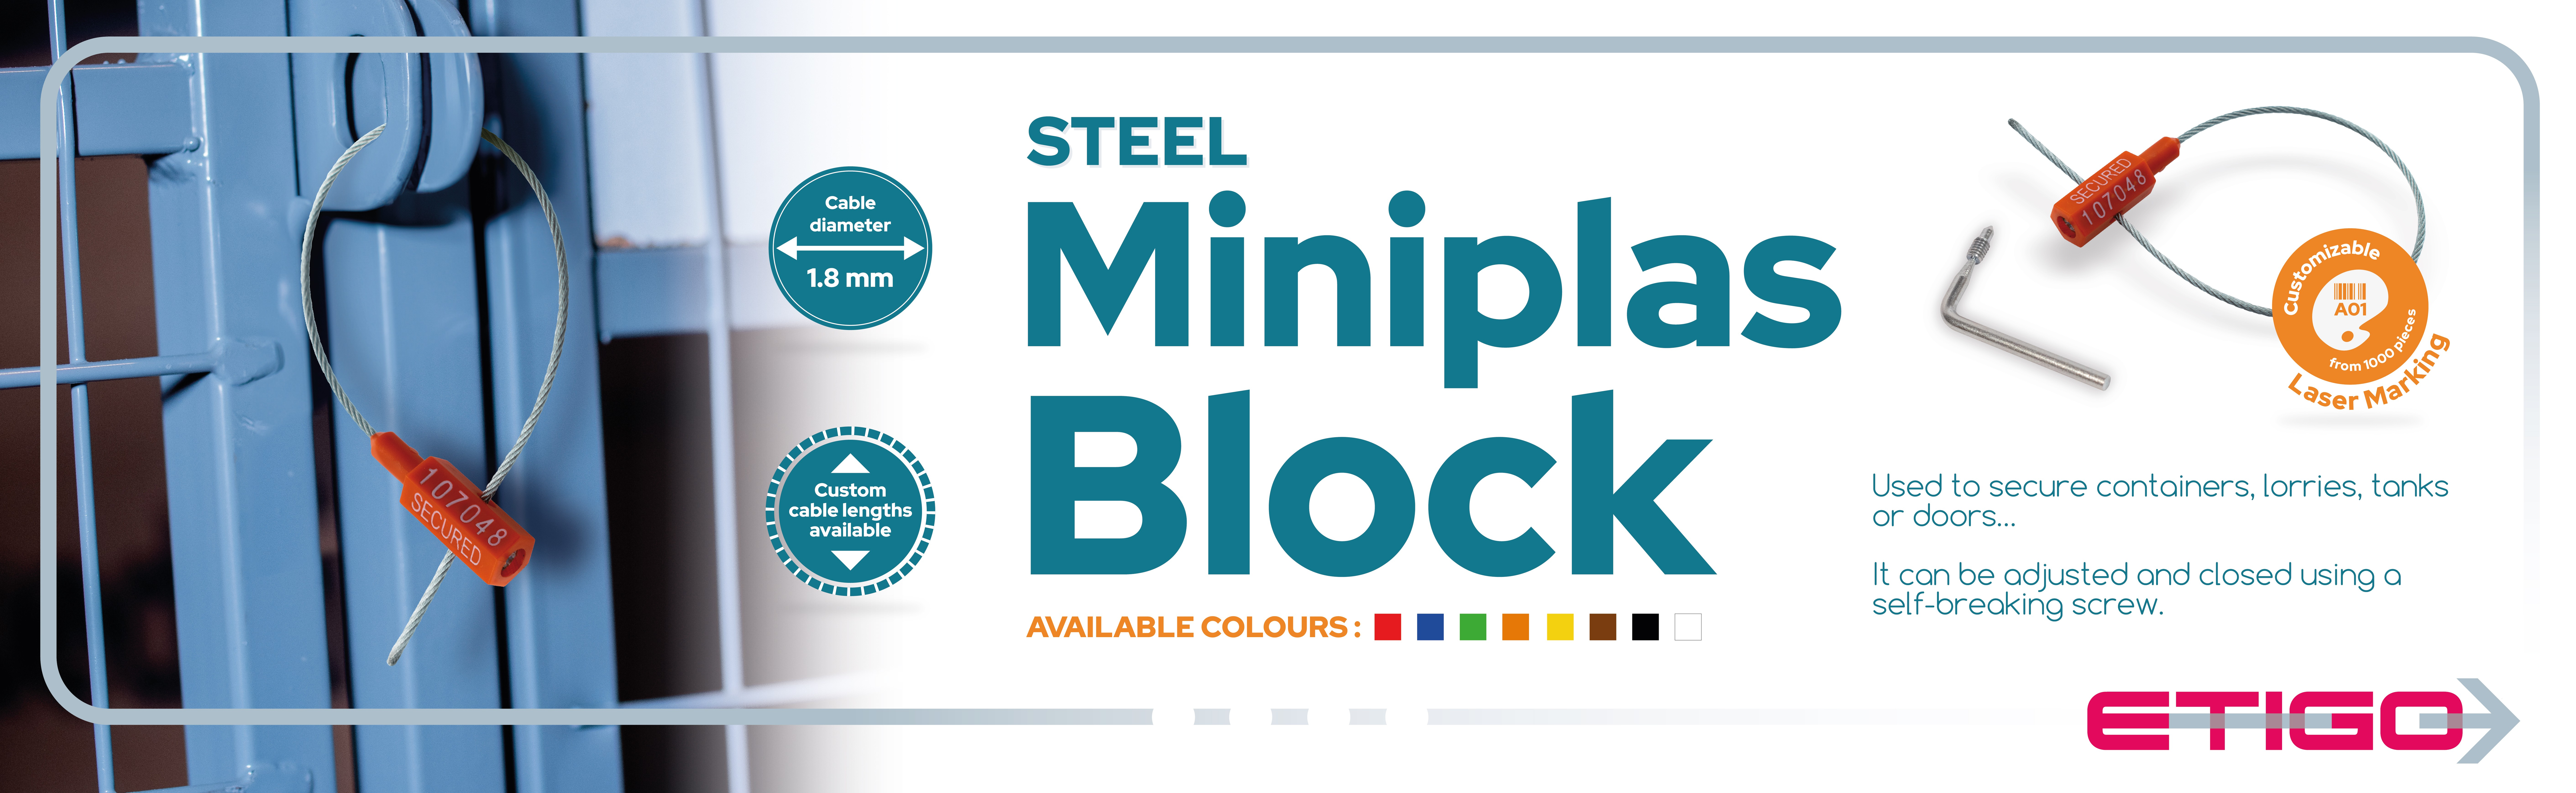 miniplas block